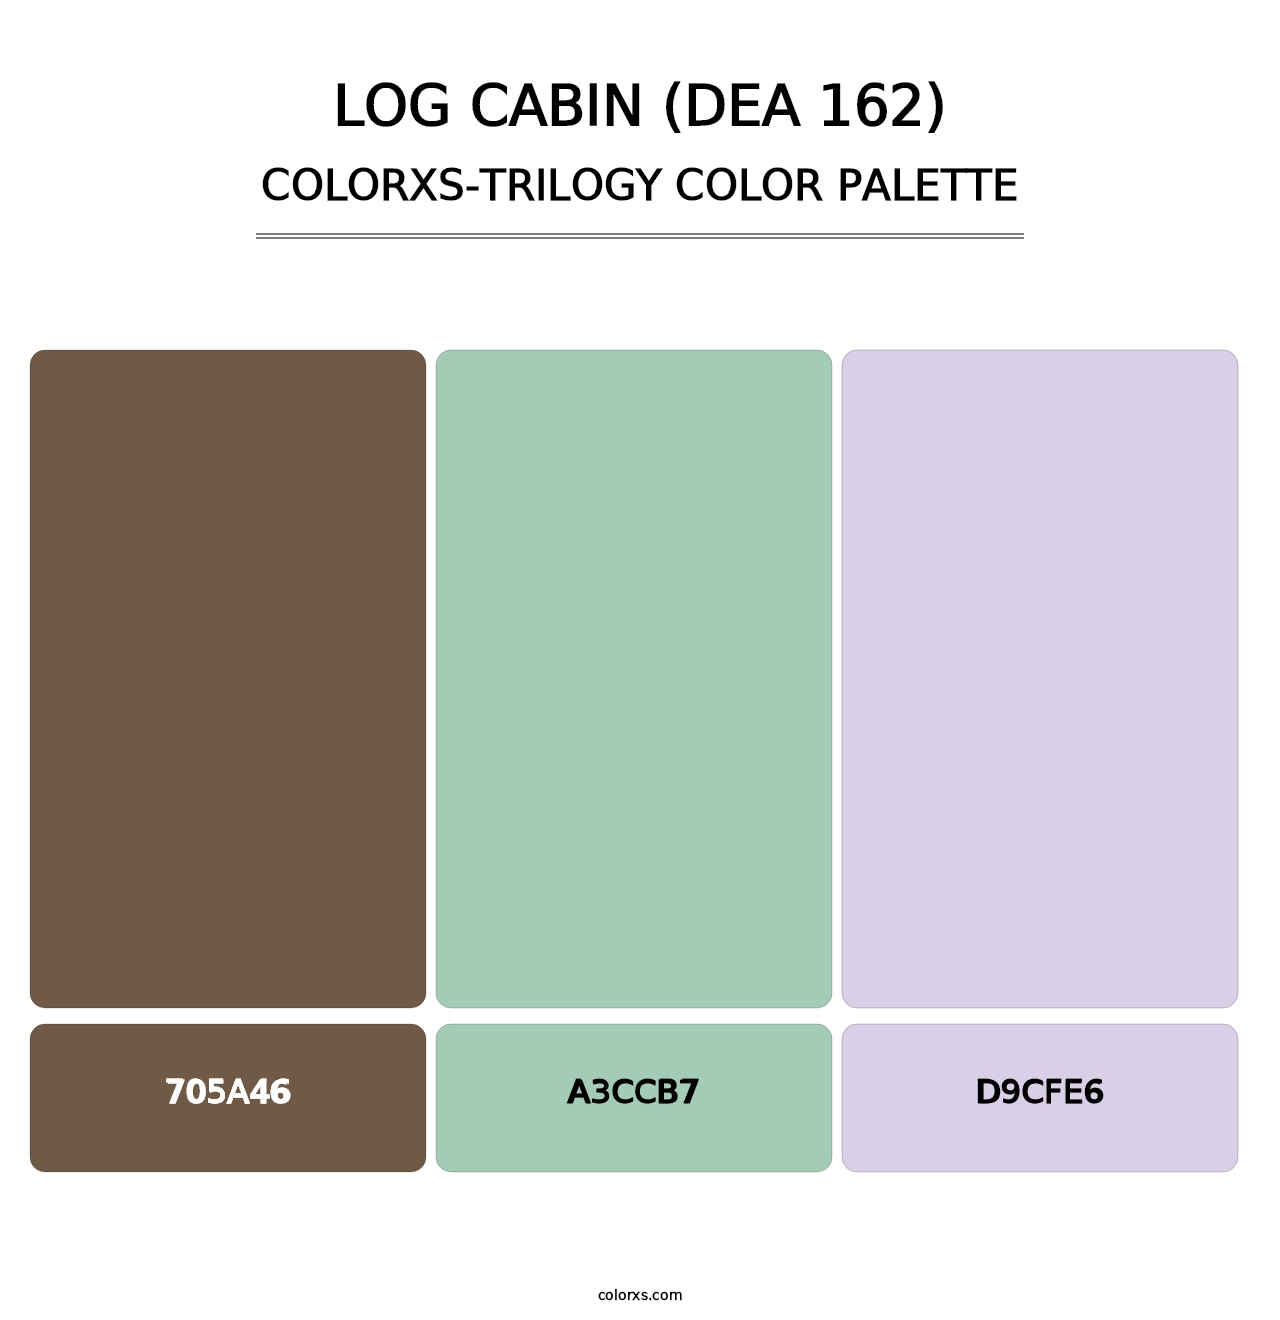 Log Cabin (DEA 162) - Colorxs Trilogy Palette